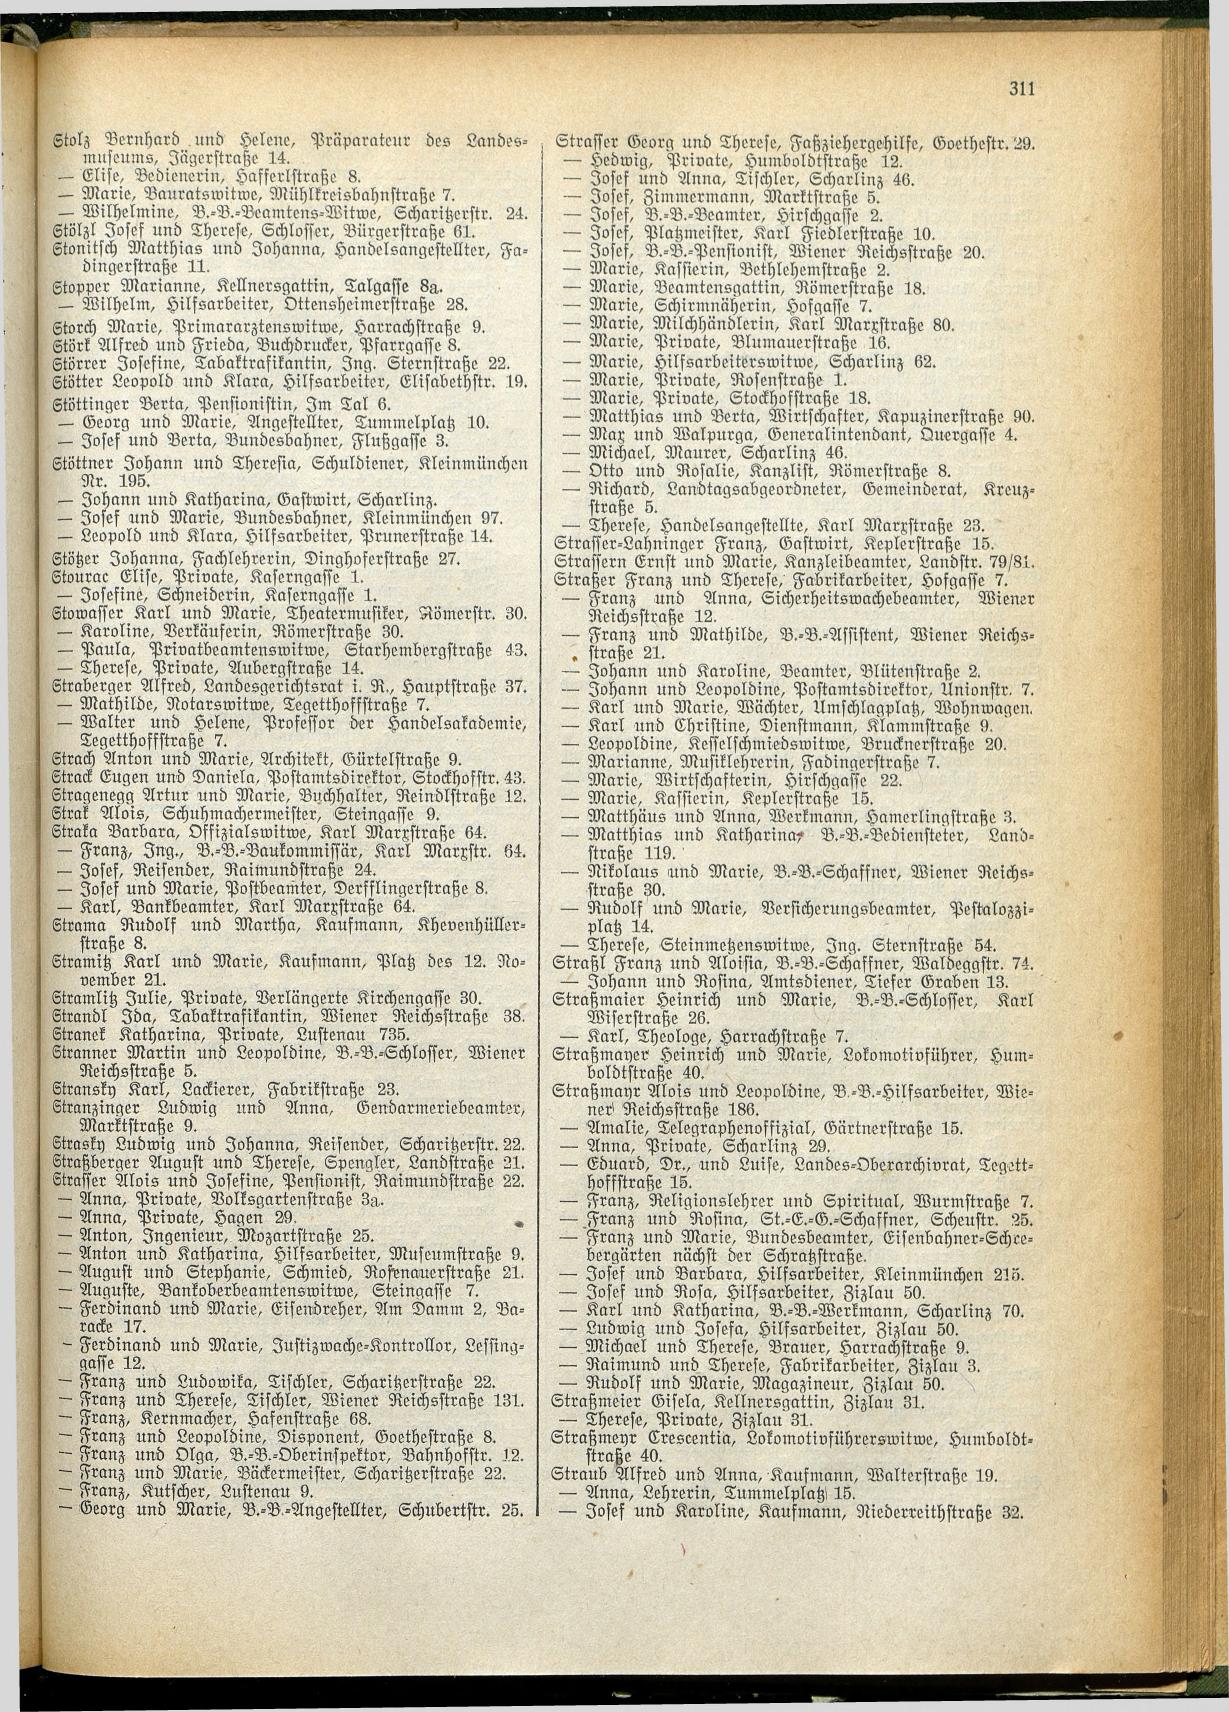 Amtliches Linzer Adreßbuch 1928 - Seite 313